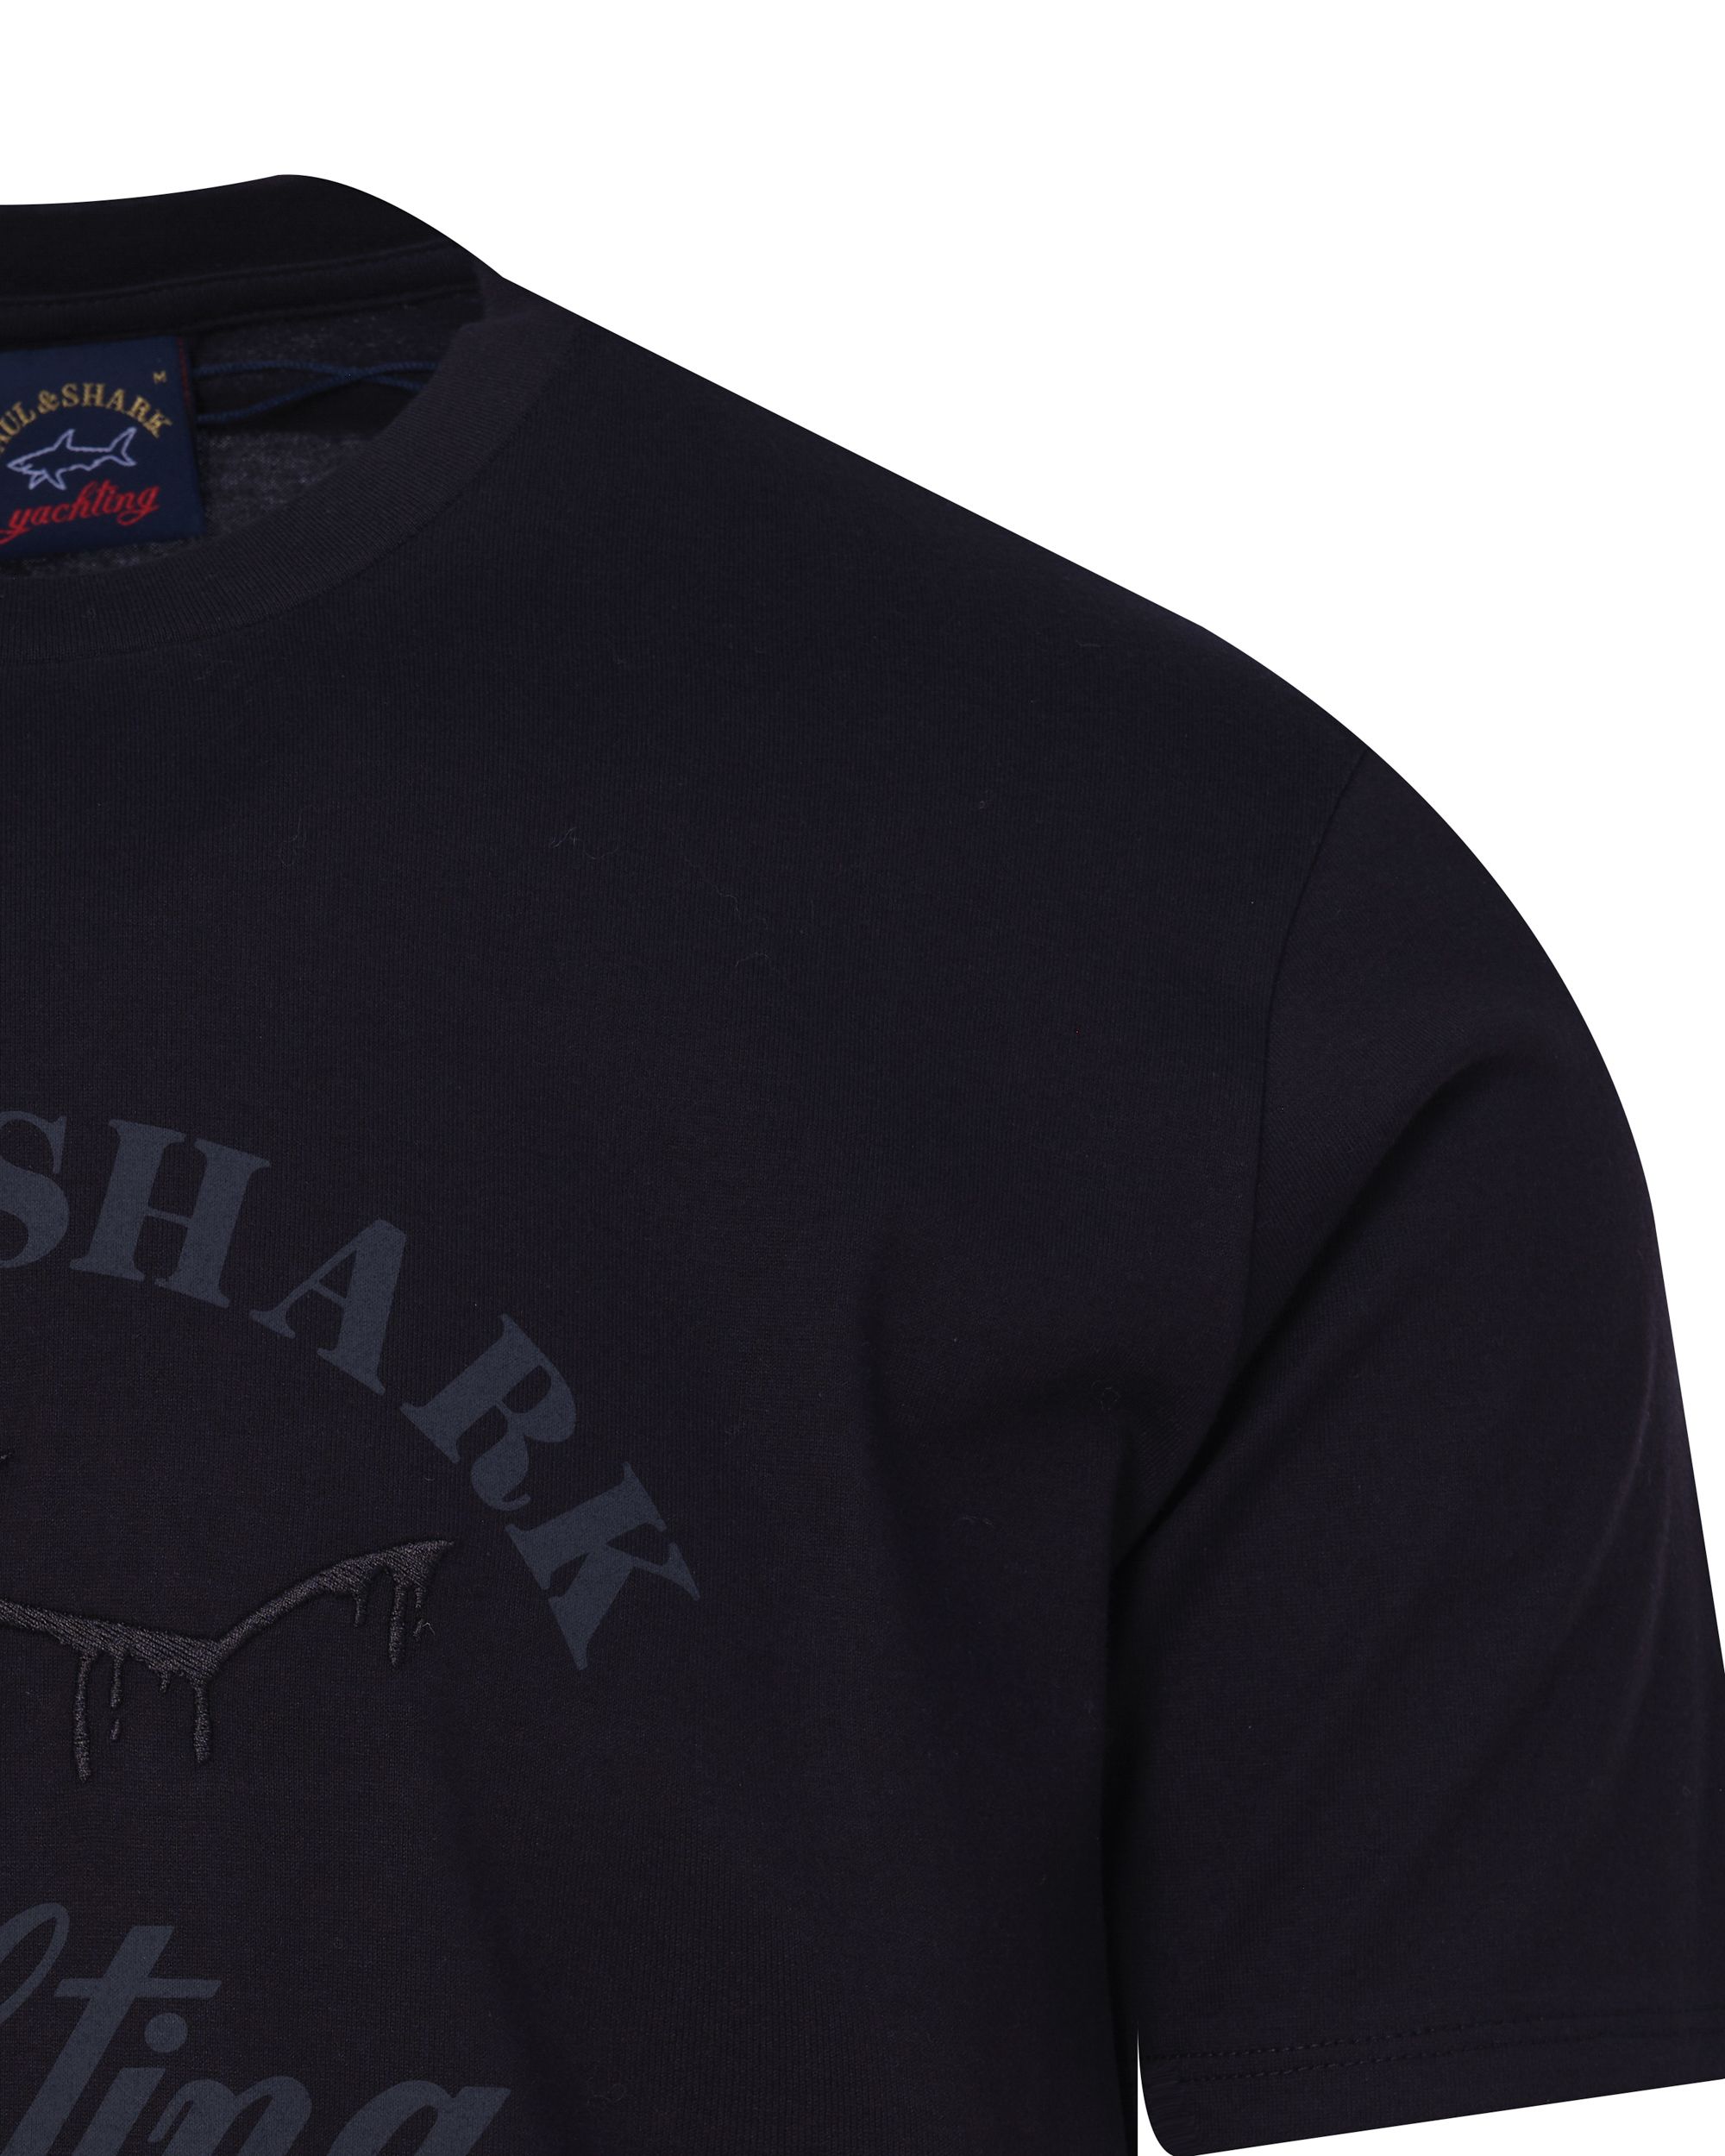 Paul & Shark T-shirt KM Zwart 090798-001-L